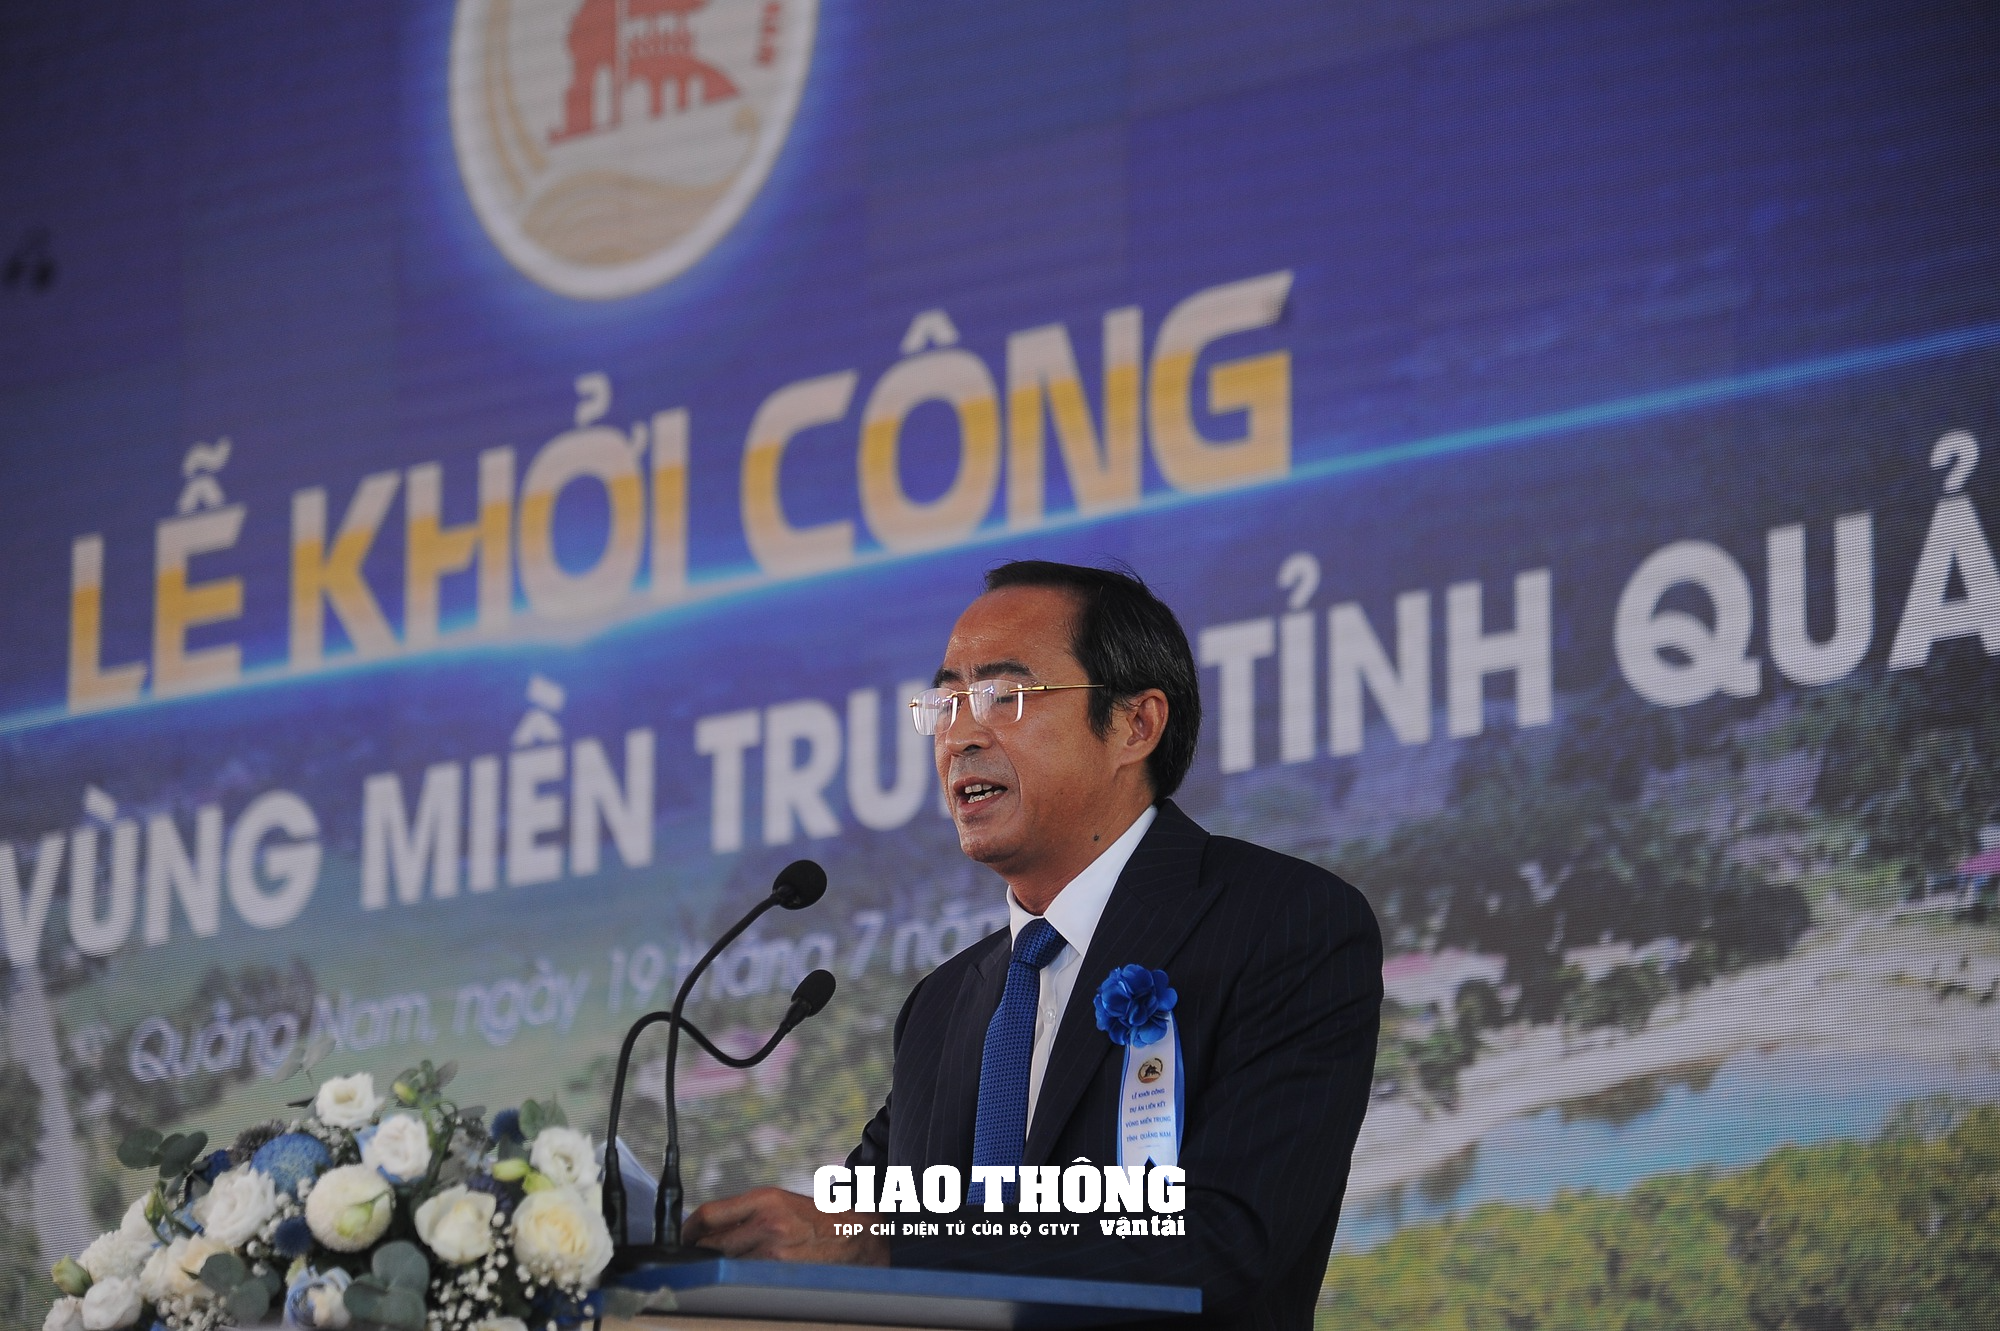 Khởi công dự án đường liên kết vùng miền Trung tỉnh Quảng Nam hơn 700 tỷ đồng - Ảnh 7.